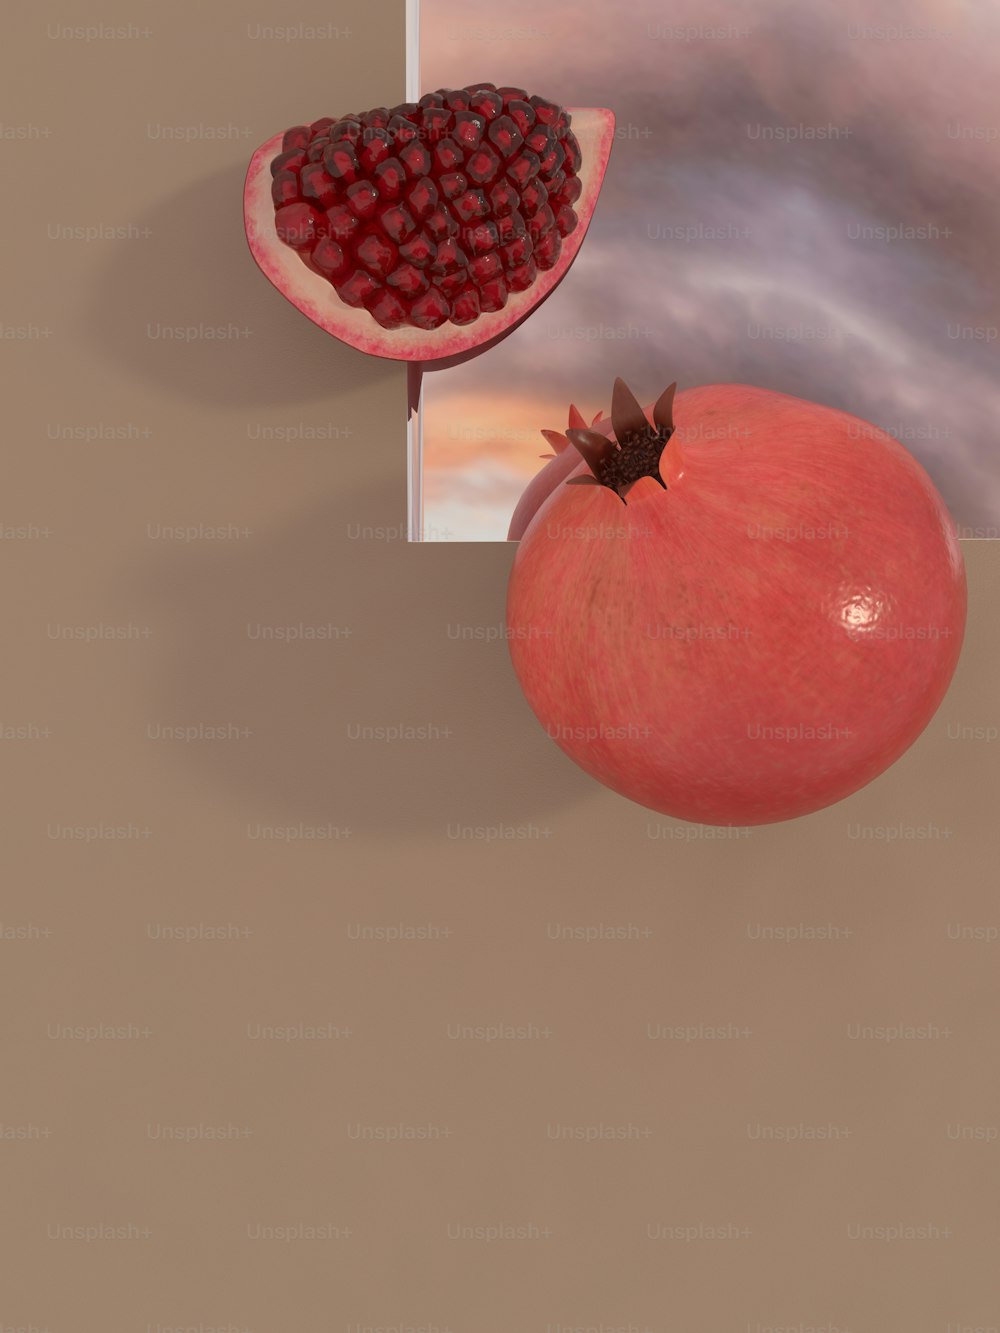 Ein Bild von einem Granatapfel und einem Stück Obst